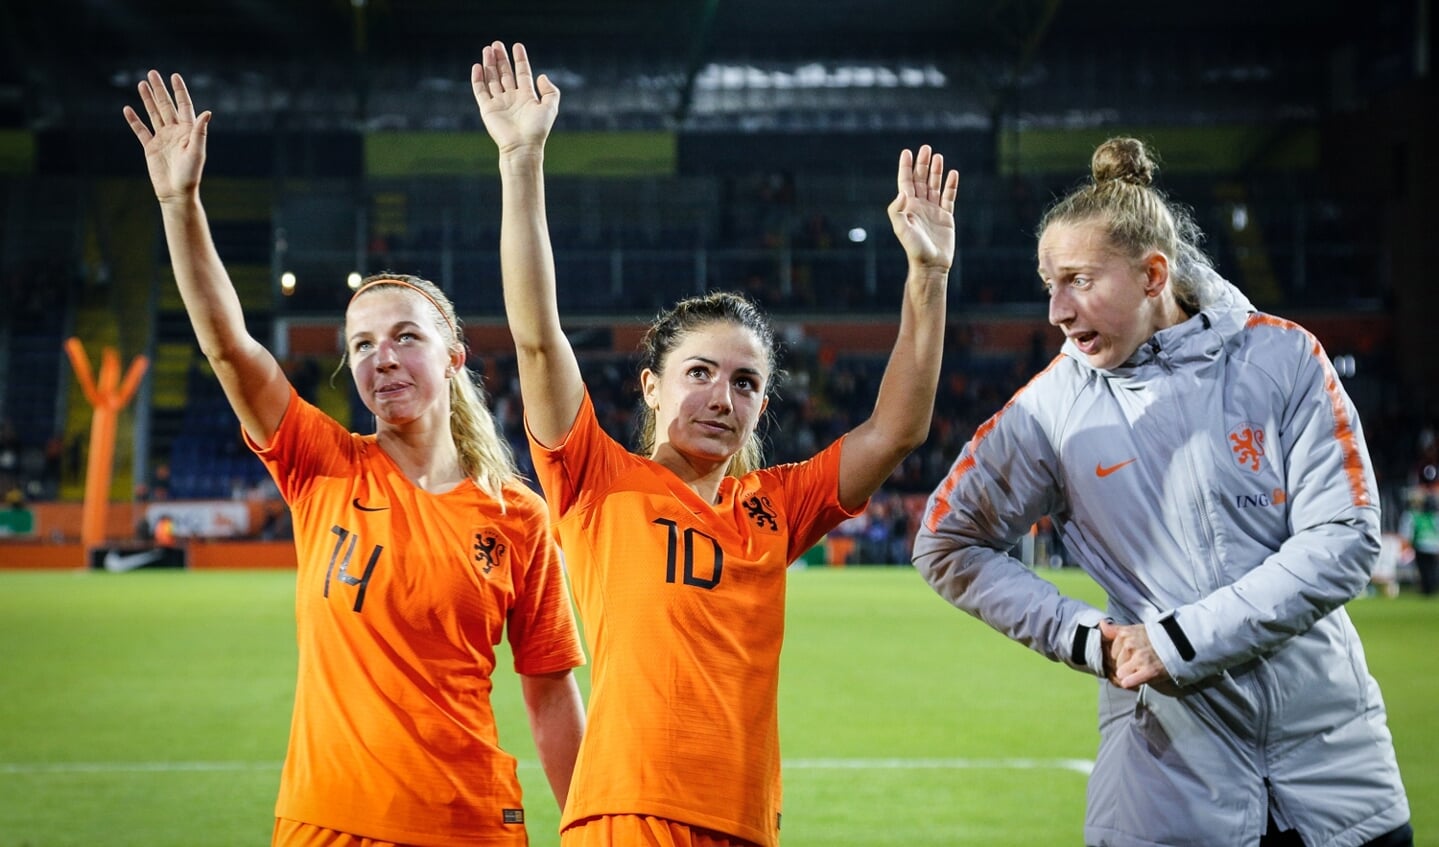 De Oranje Leeuwinnen versloegen Denemarken met 2-0, vrijdag 5 oktober in het Rat Verlegh Stadion.